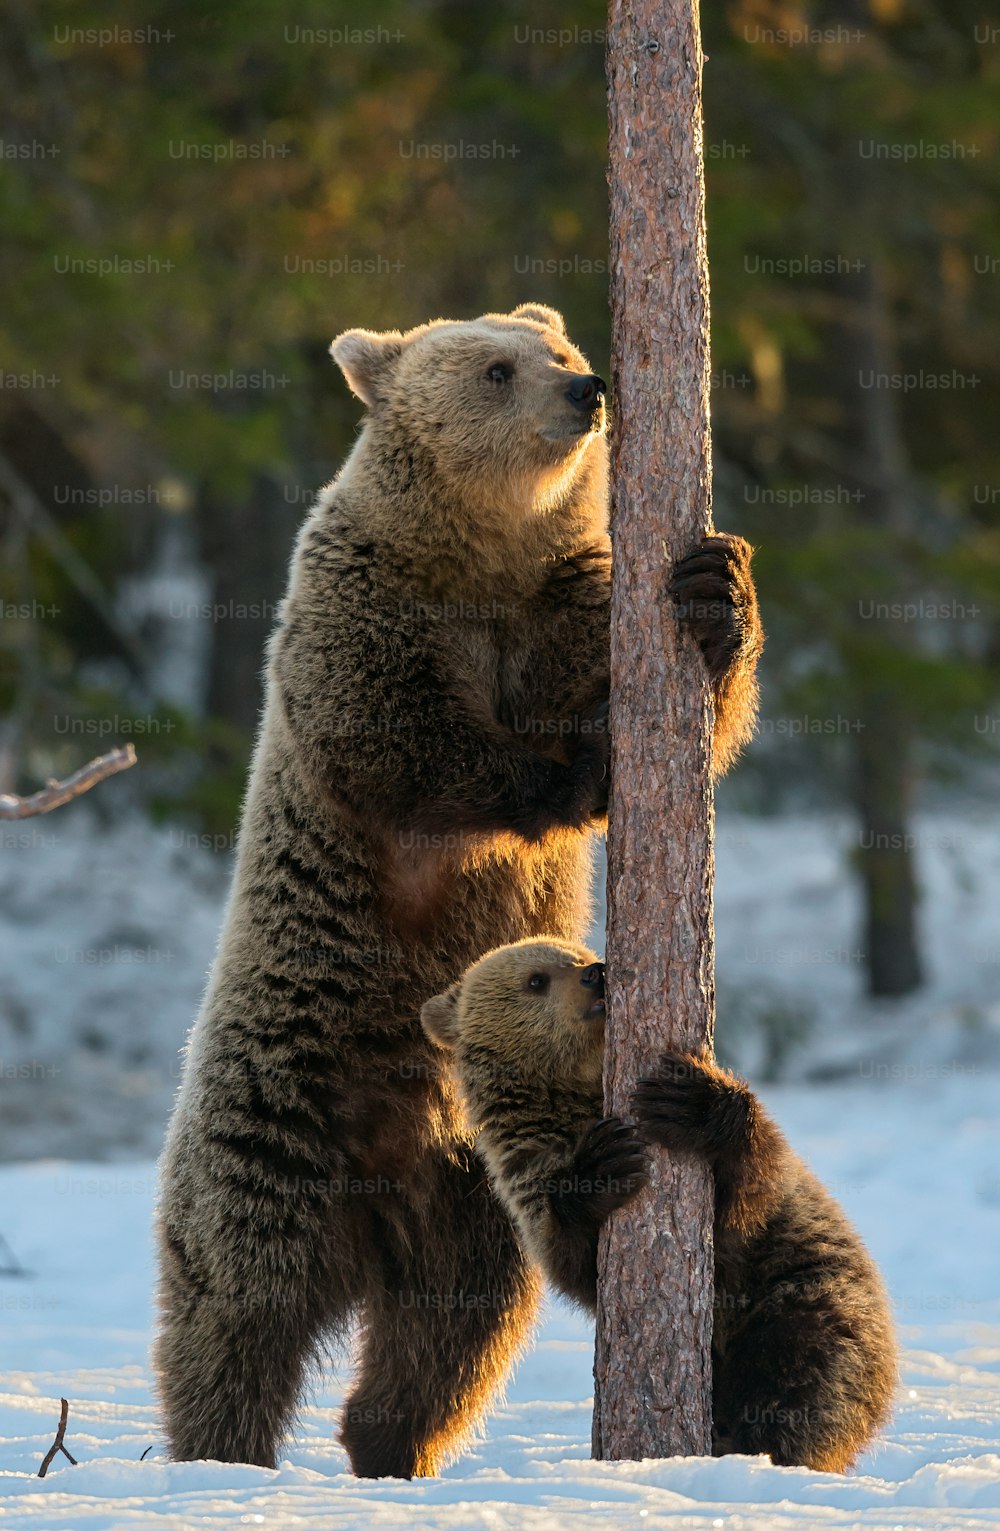 Oso y cachorro. Los osos pardos se paran sobre sus patas traseras junto a un pino en el bosque invernal a la luz del atardecer. Nombre científico: Ursus arctos. Hábitat natural. Temporada de invierno". n